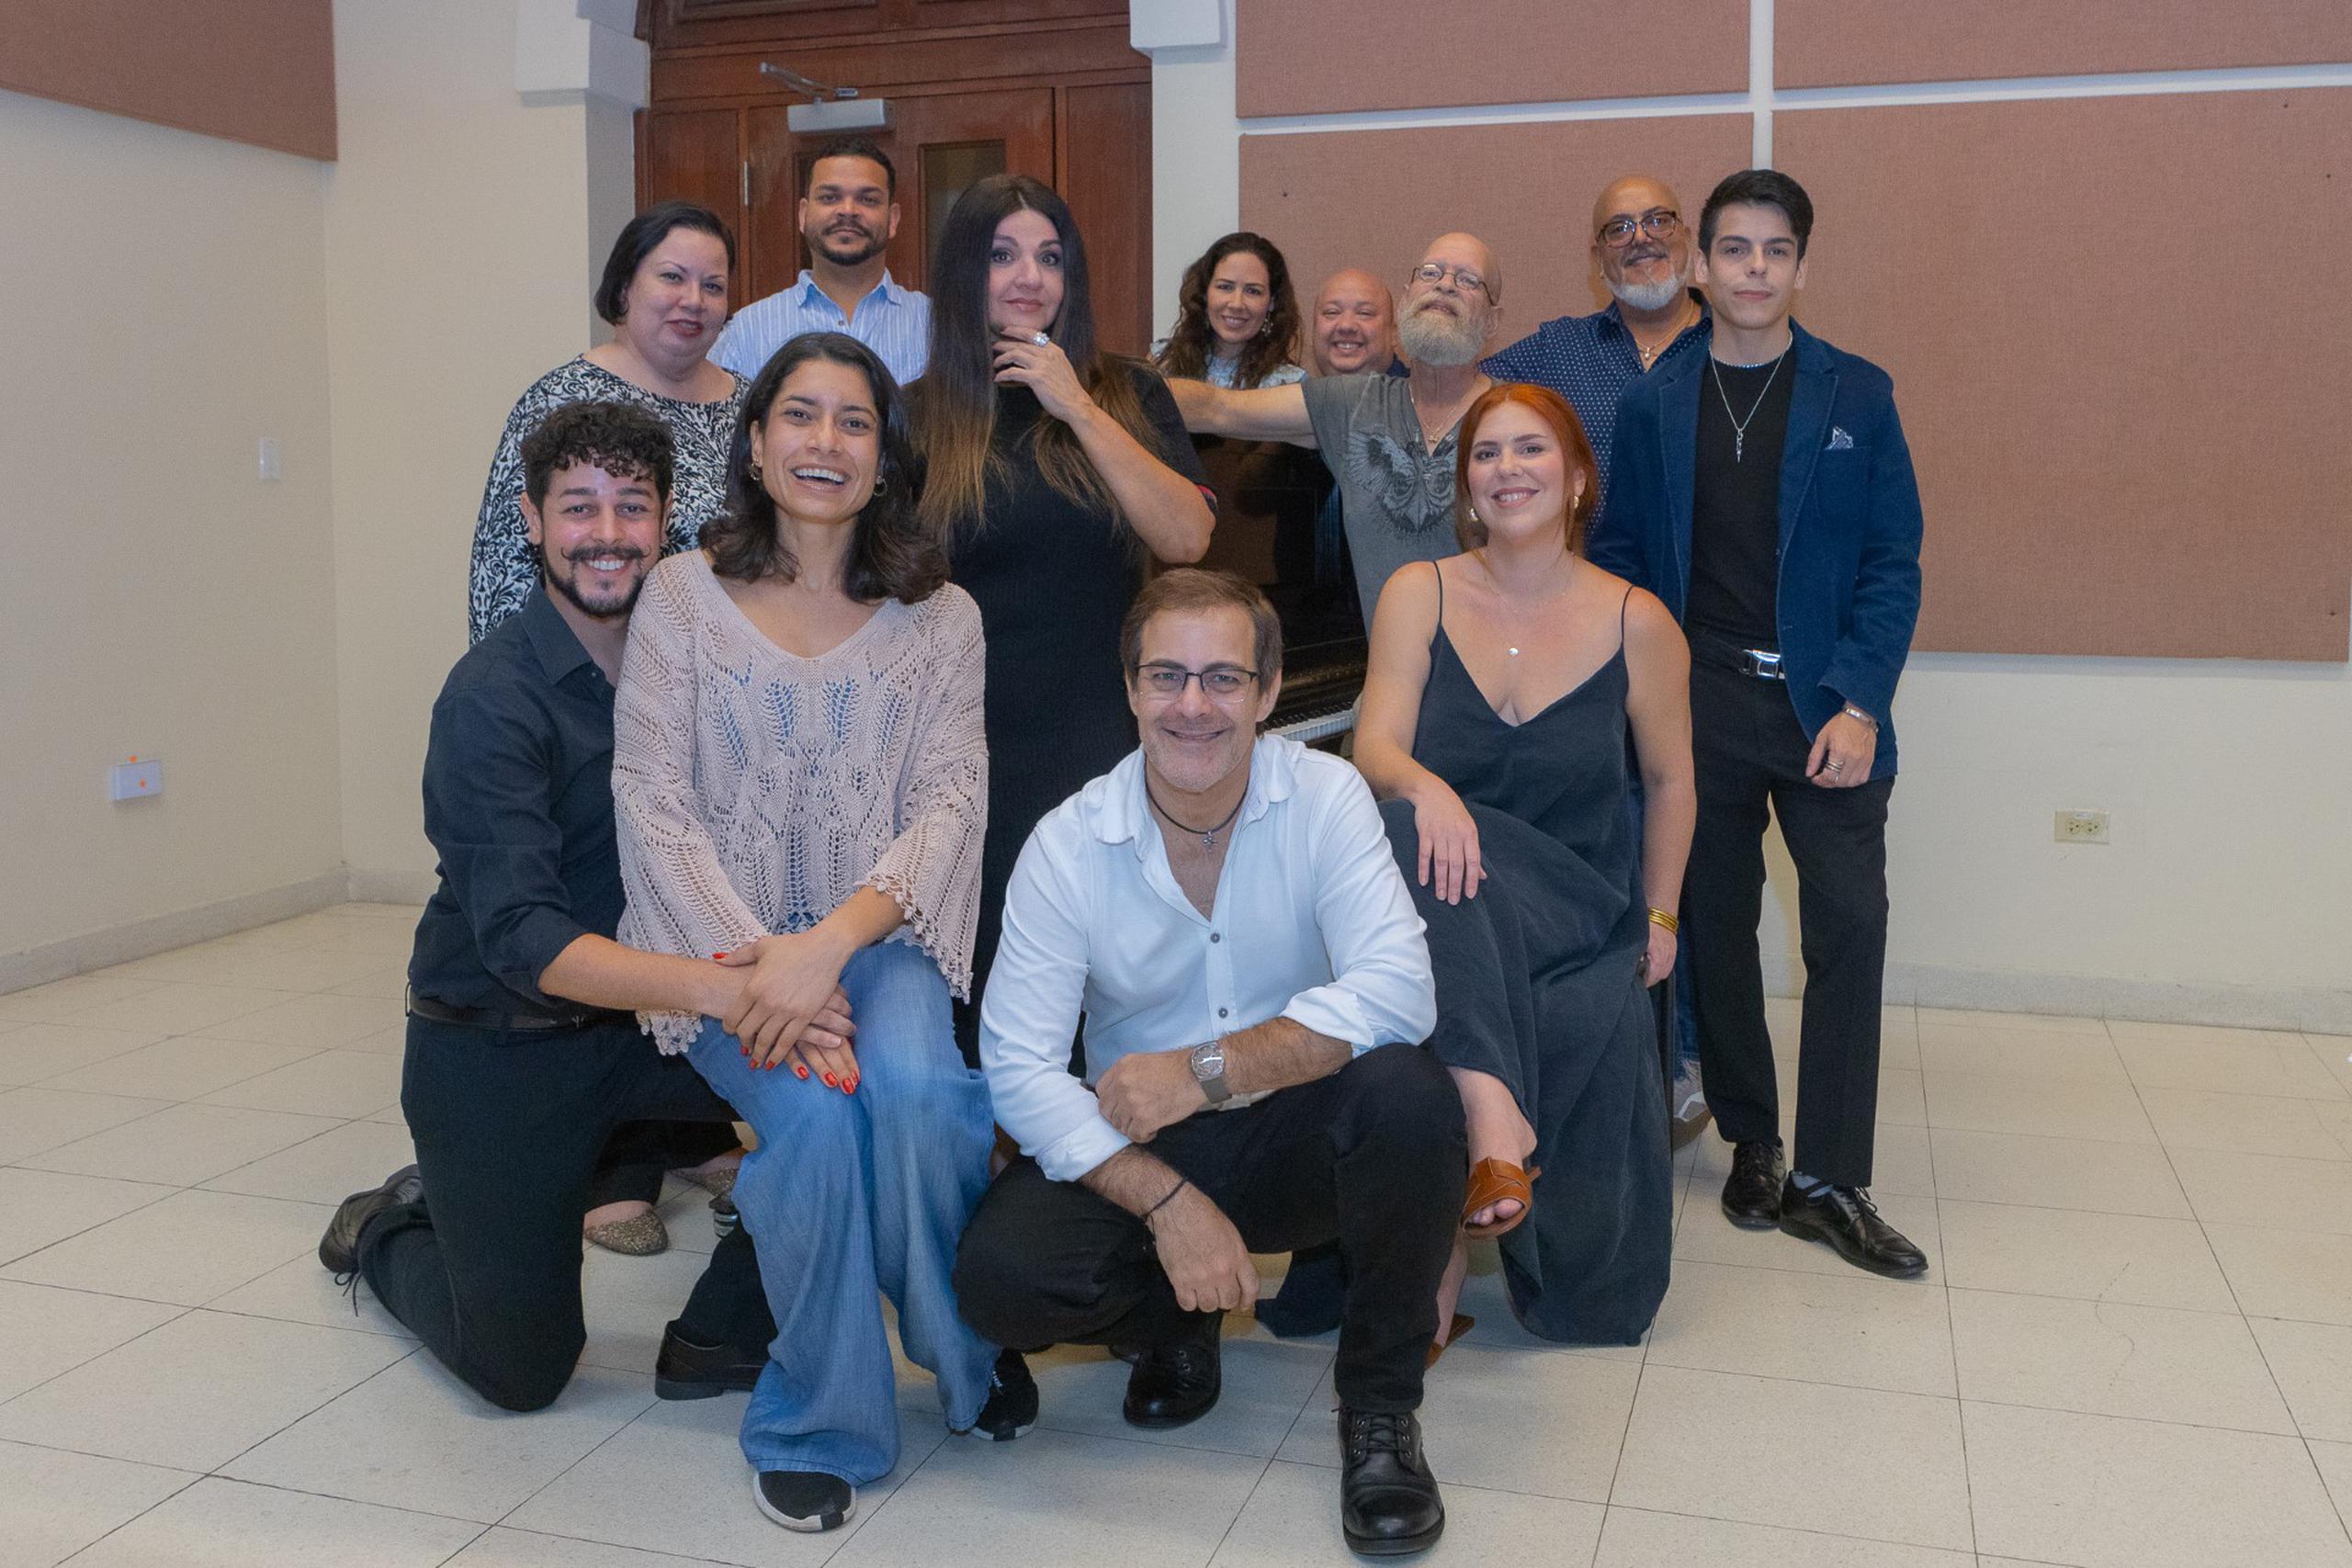 Con la dirección de Gilberto Valenzuela, la sabrosa zarzuela "El barbero de Sevilla ¡En Aguadilla!" se presentará en el Conservatorio de Música en Miramar.